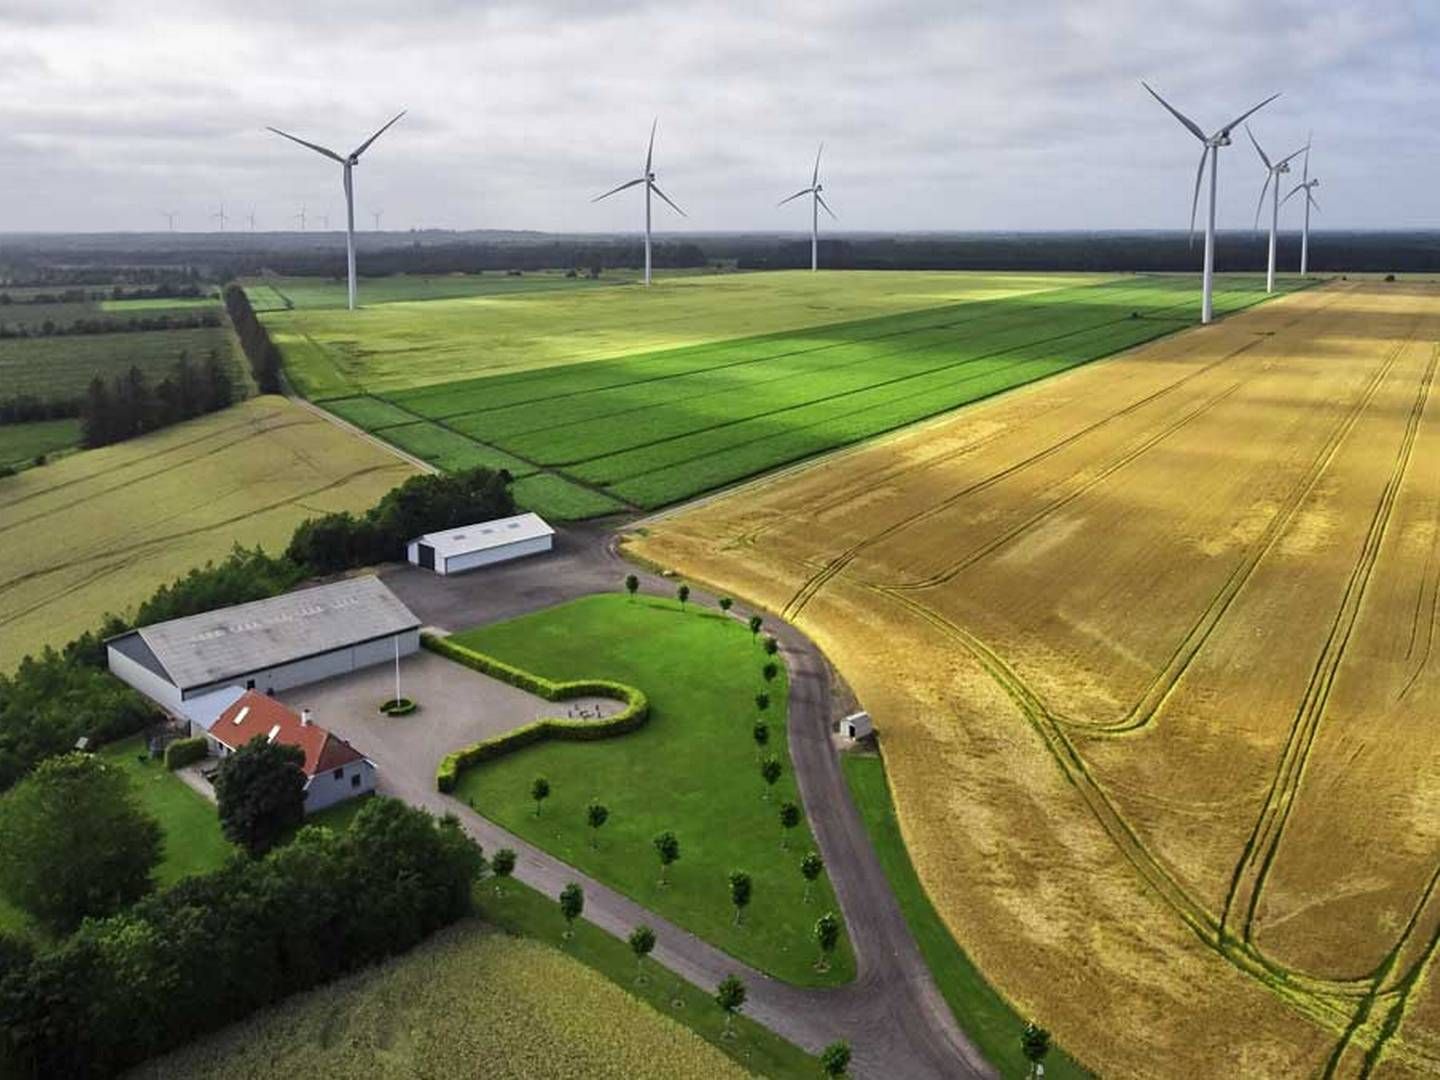 Flere realkreditselskaber har udsendt instrukser om fraråde belåning til ejendomme tæt på vindmøller. | Foto: Se Blue Renewables